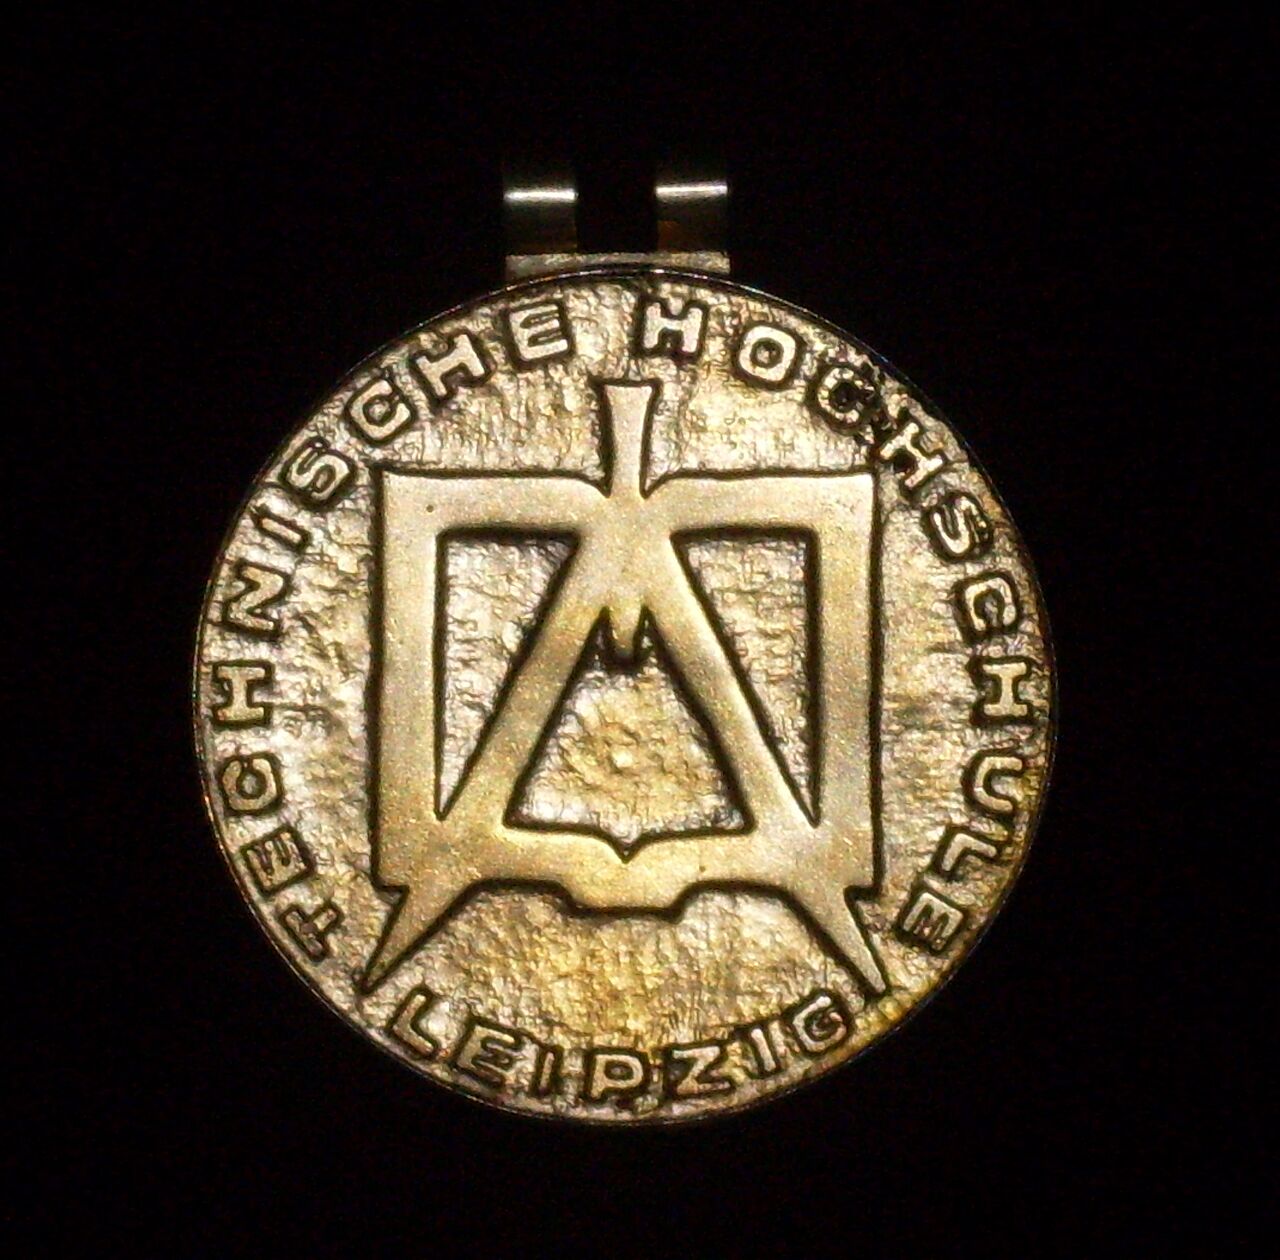 Abbildung des goldenen Medaillons der Rektorenkette der früheren TH Leipzig mit der Inschrift "Technischen Hochschule Leipzig"